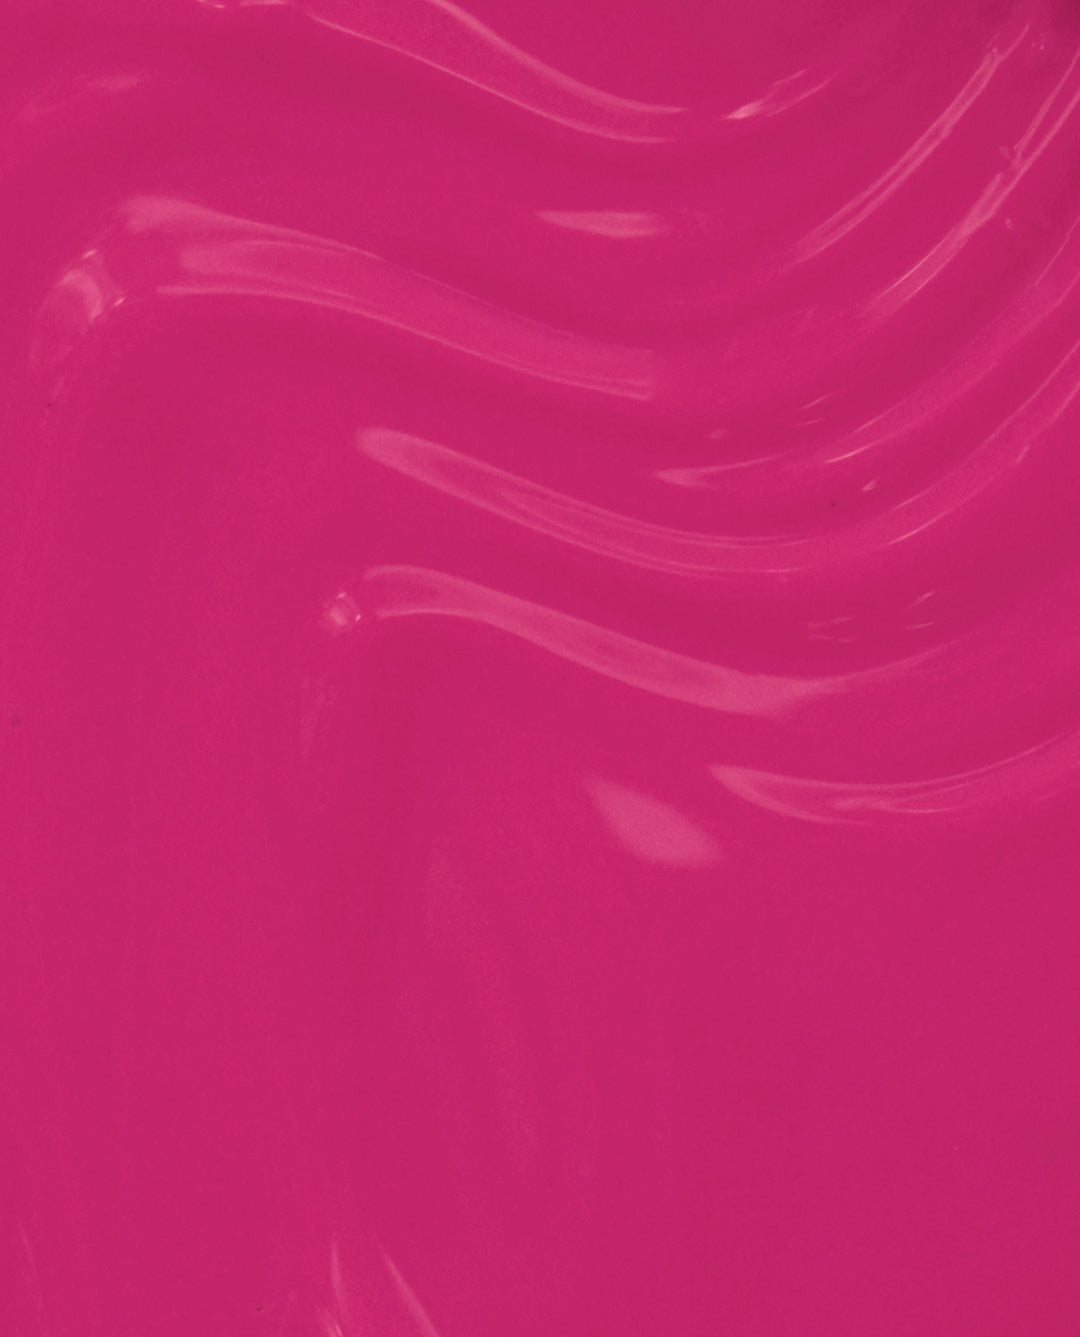 OPI Hurry-juku Get this Color! Pink Gel Nail Polish Product